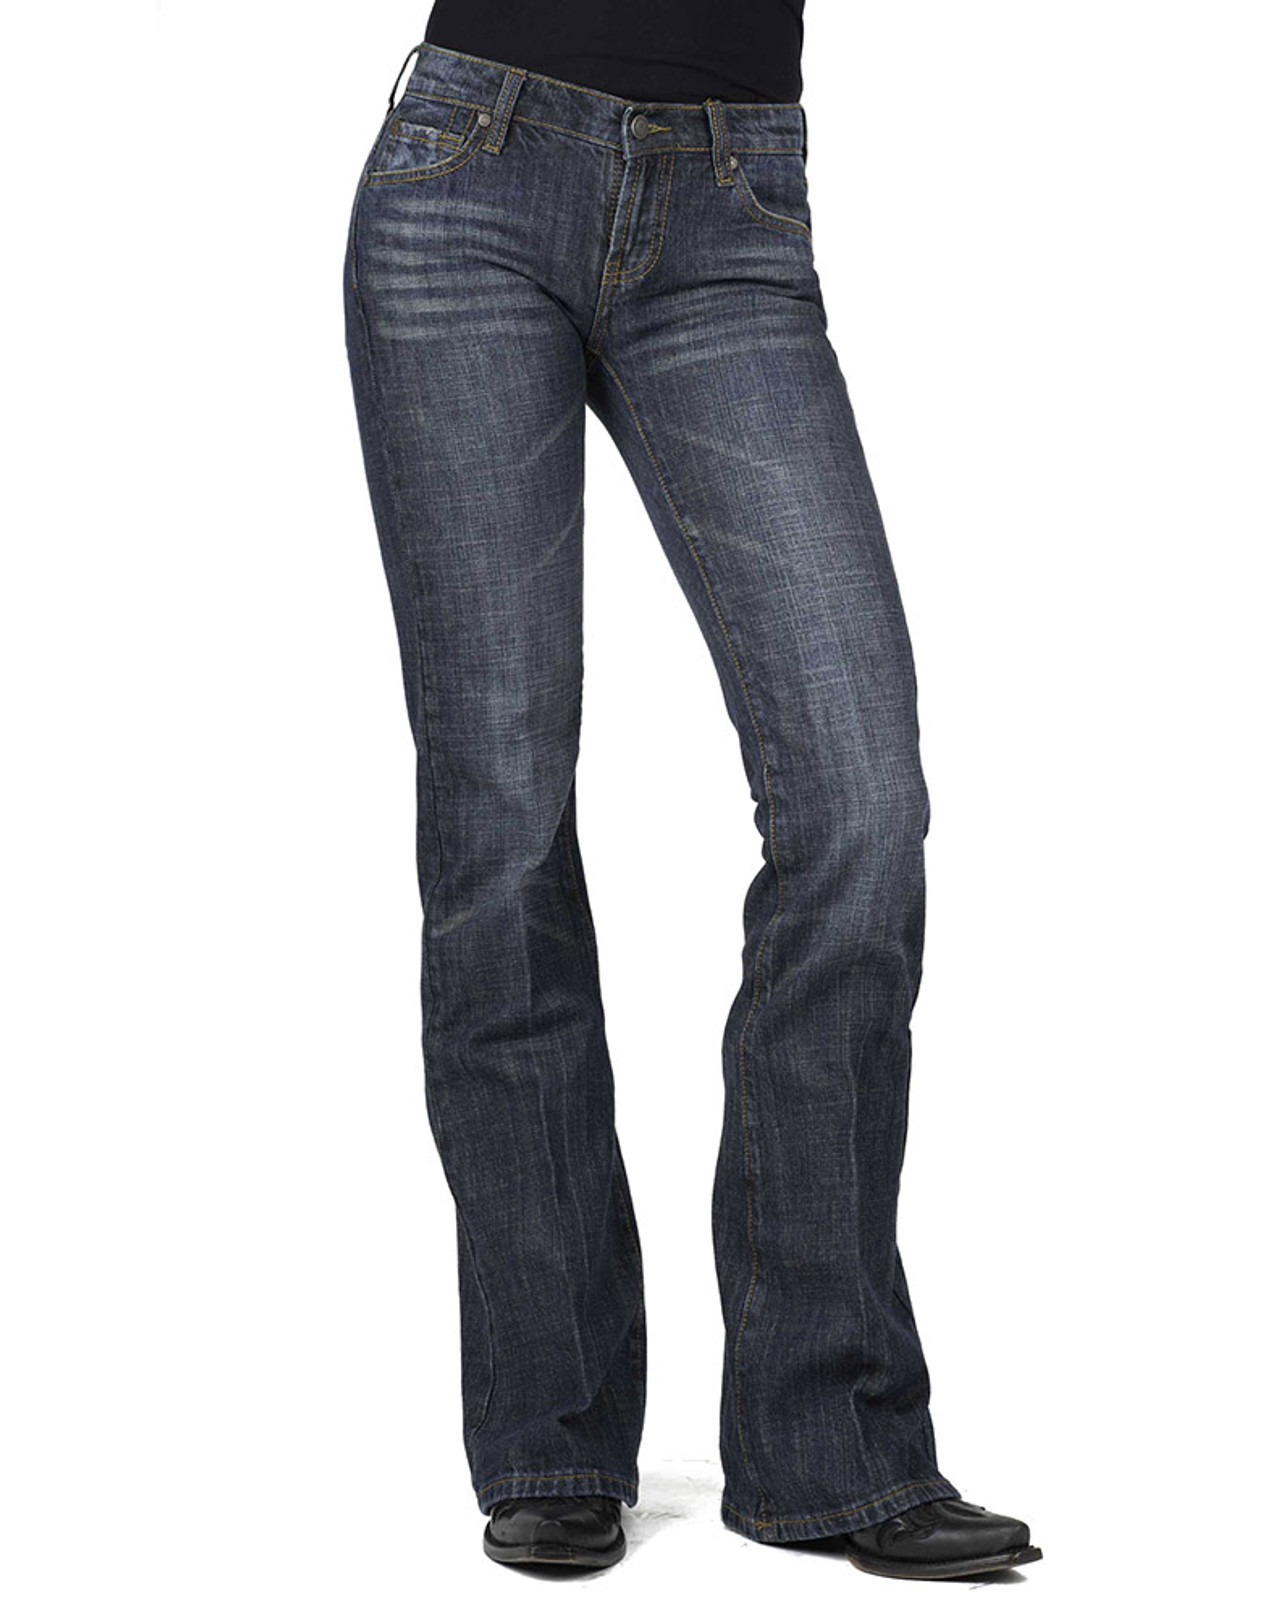 Stetson Women's 816 Stretch Denim Classic Boot Cut Jeans - Dark Wash